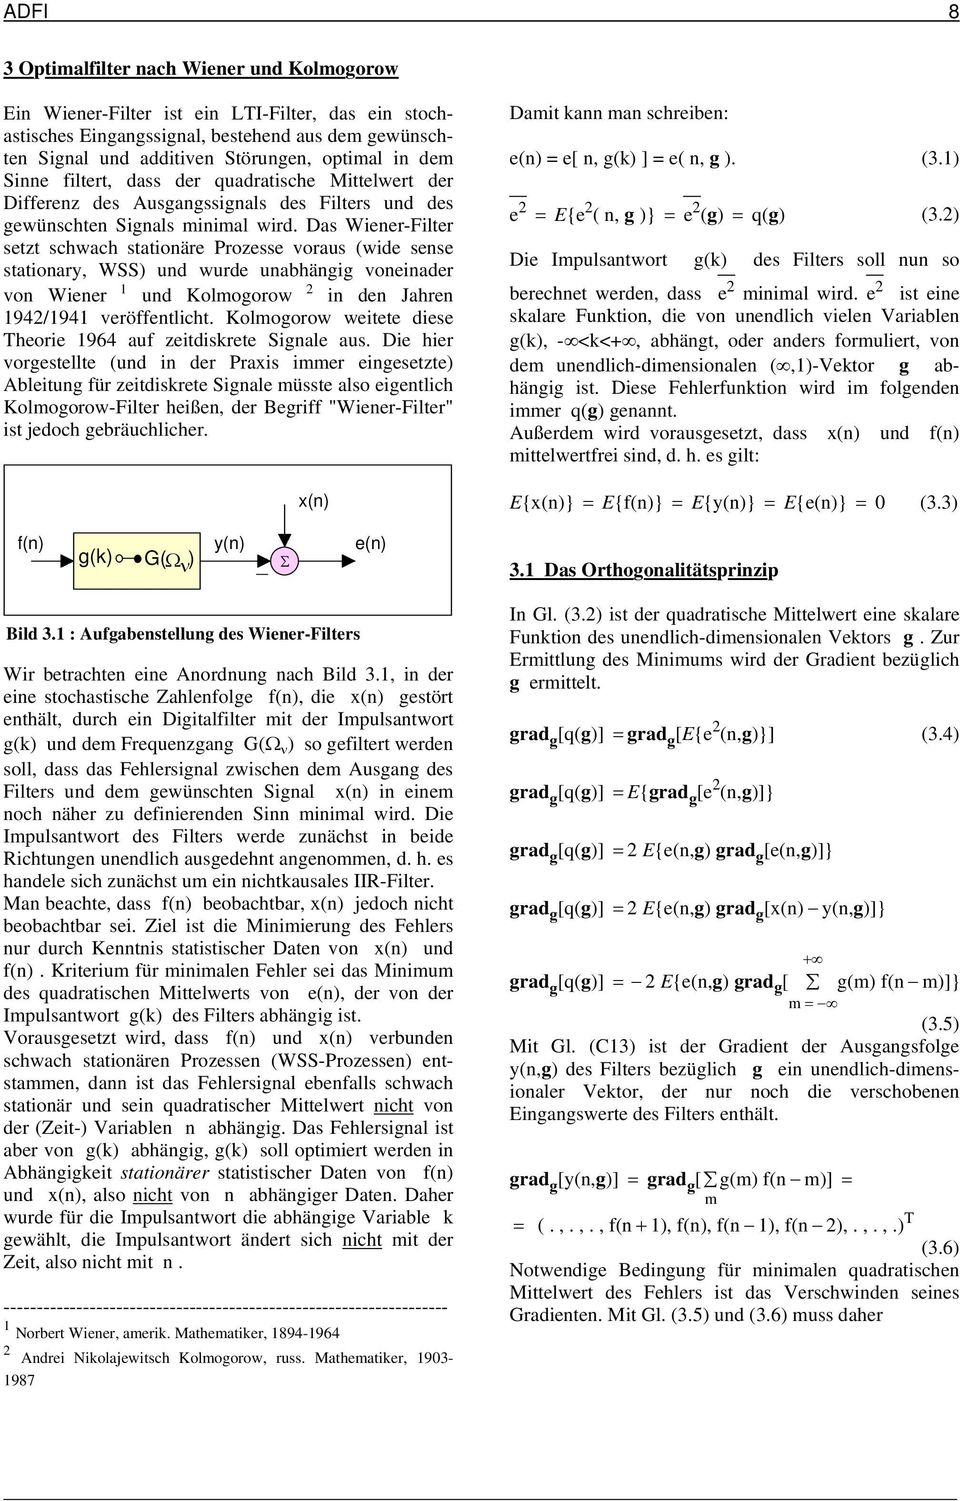 Das Wiener-Filter setzt schwach stationäre Prozesse voraus (wide sense stationary, WSS) und wurde unabhängig voneinader von Wiener und Kolmogorow in den Jahren 94/94 veröffentlicht.